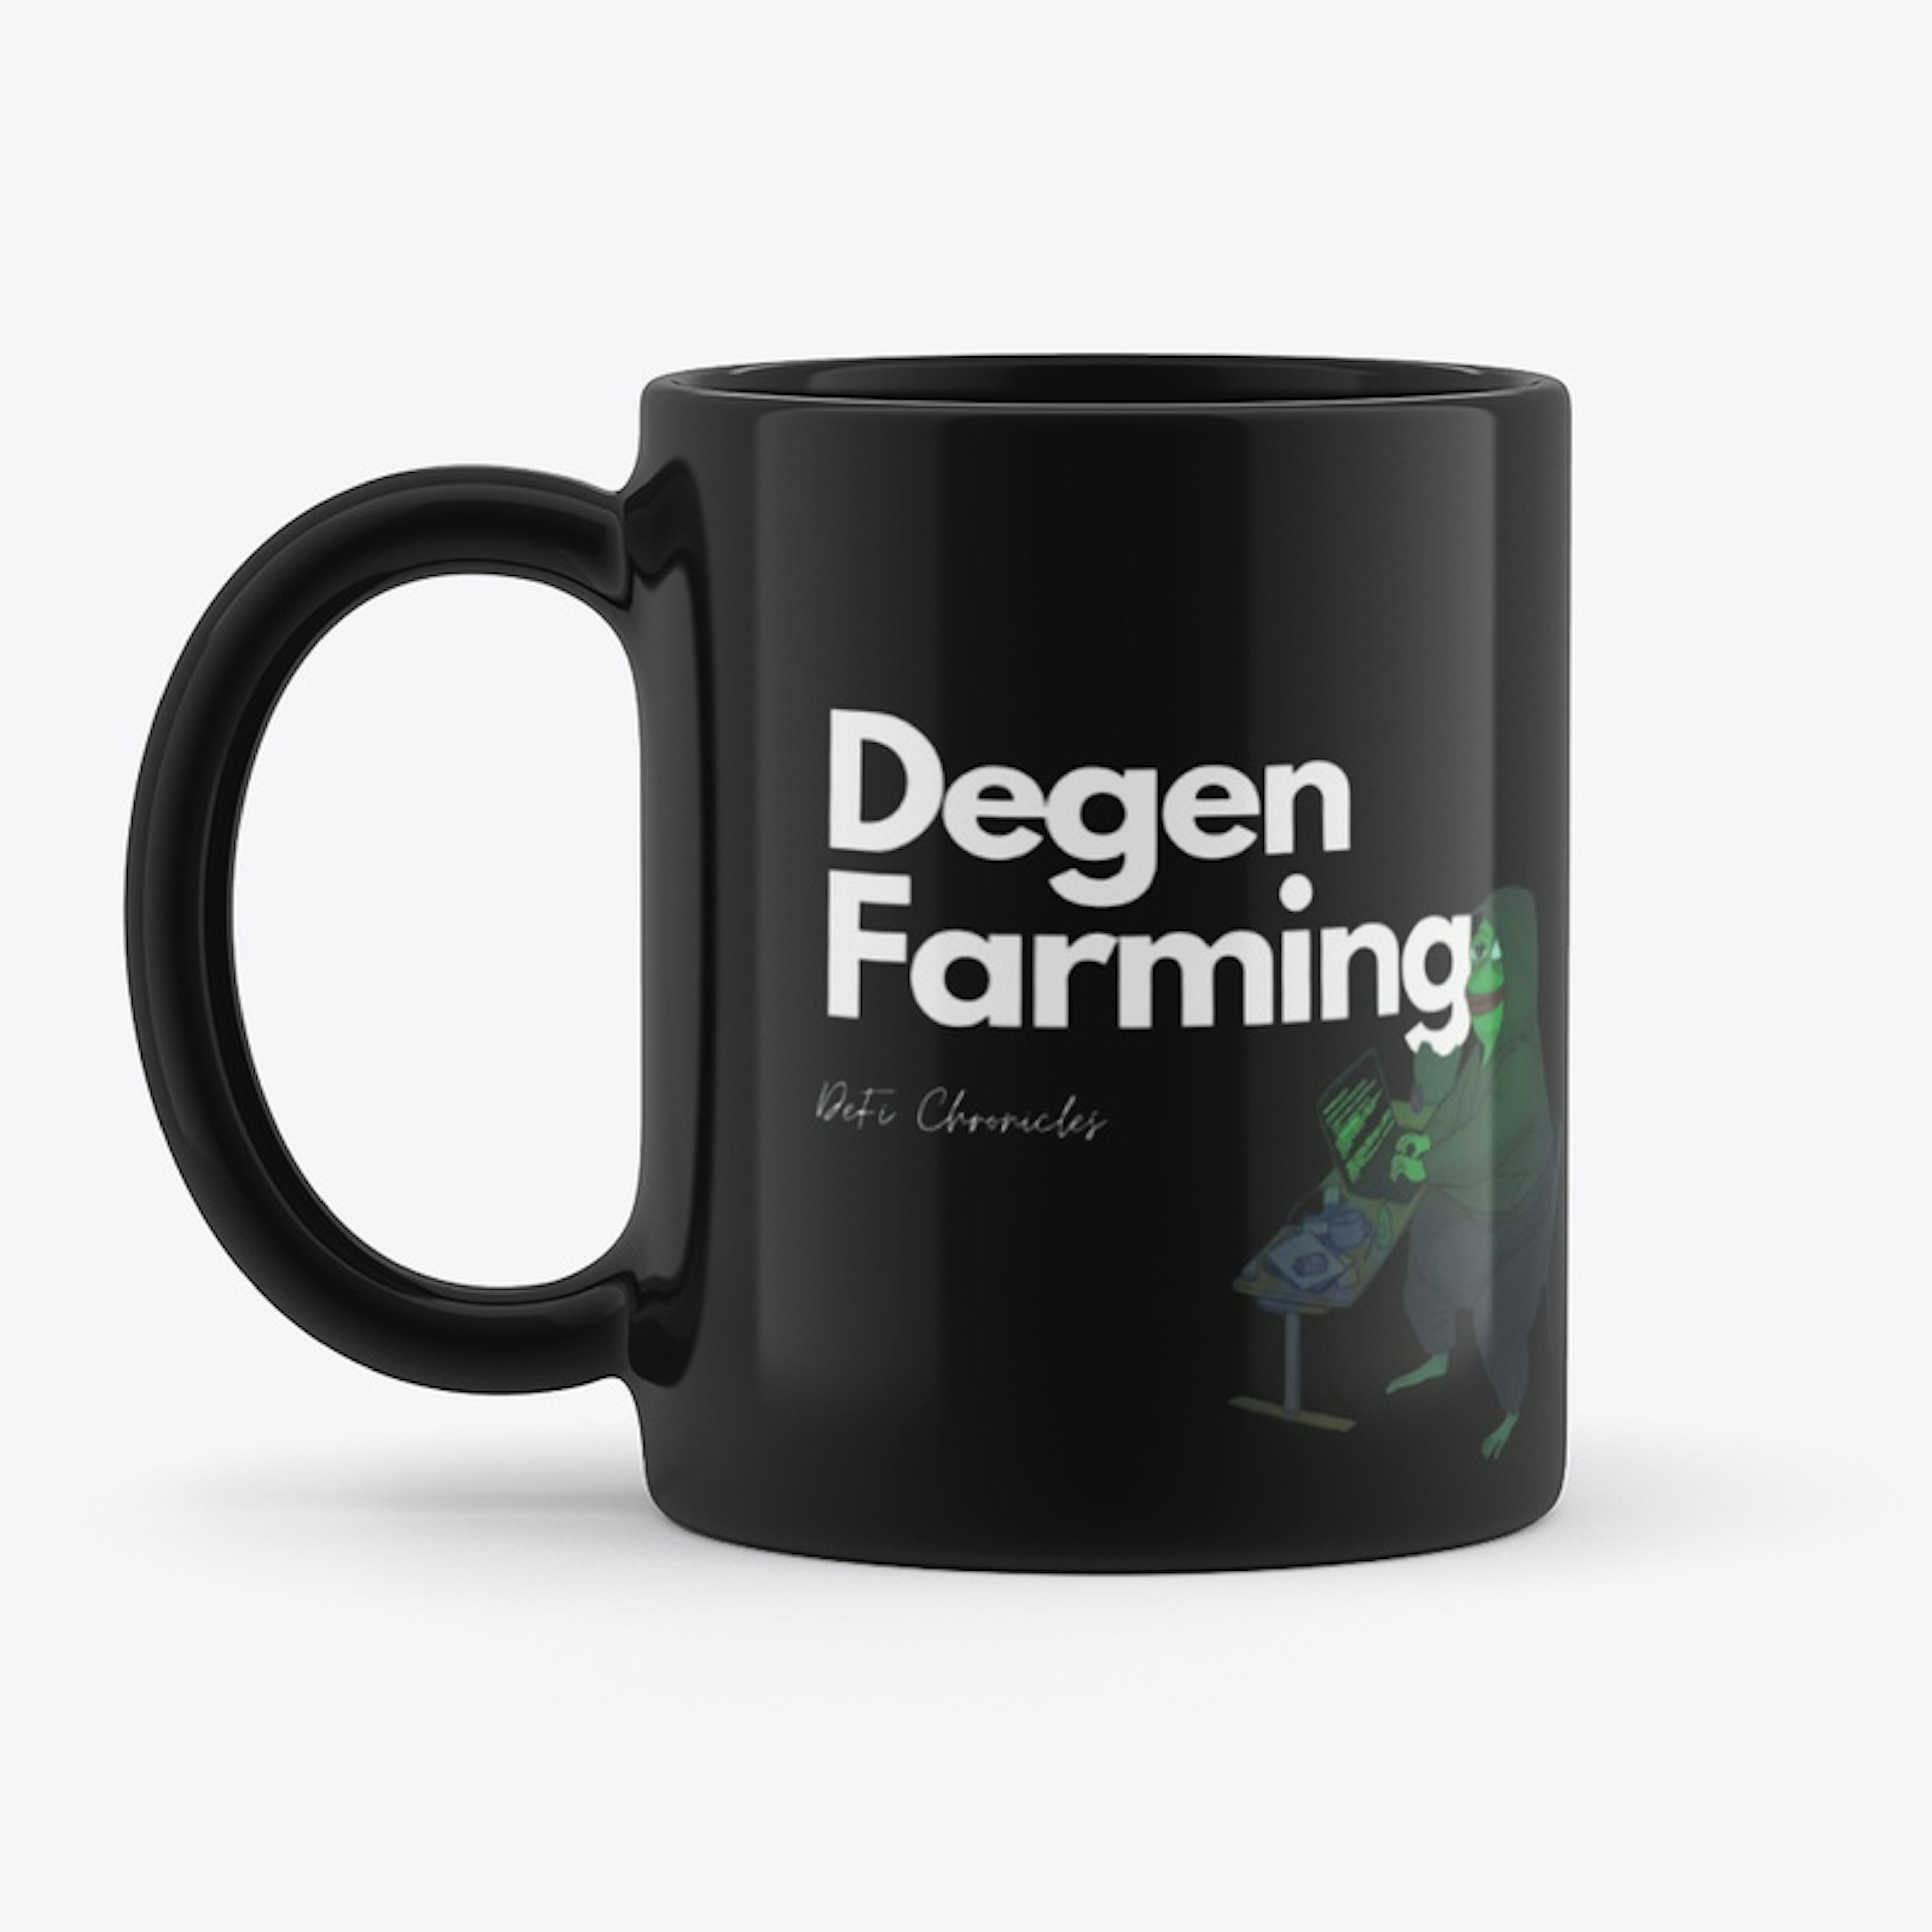 Degen Farming Mug